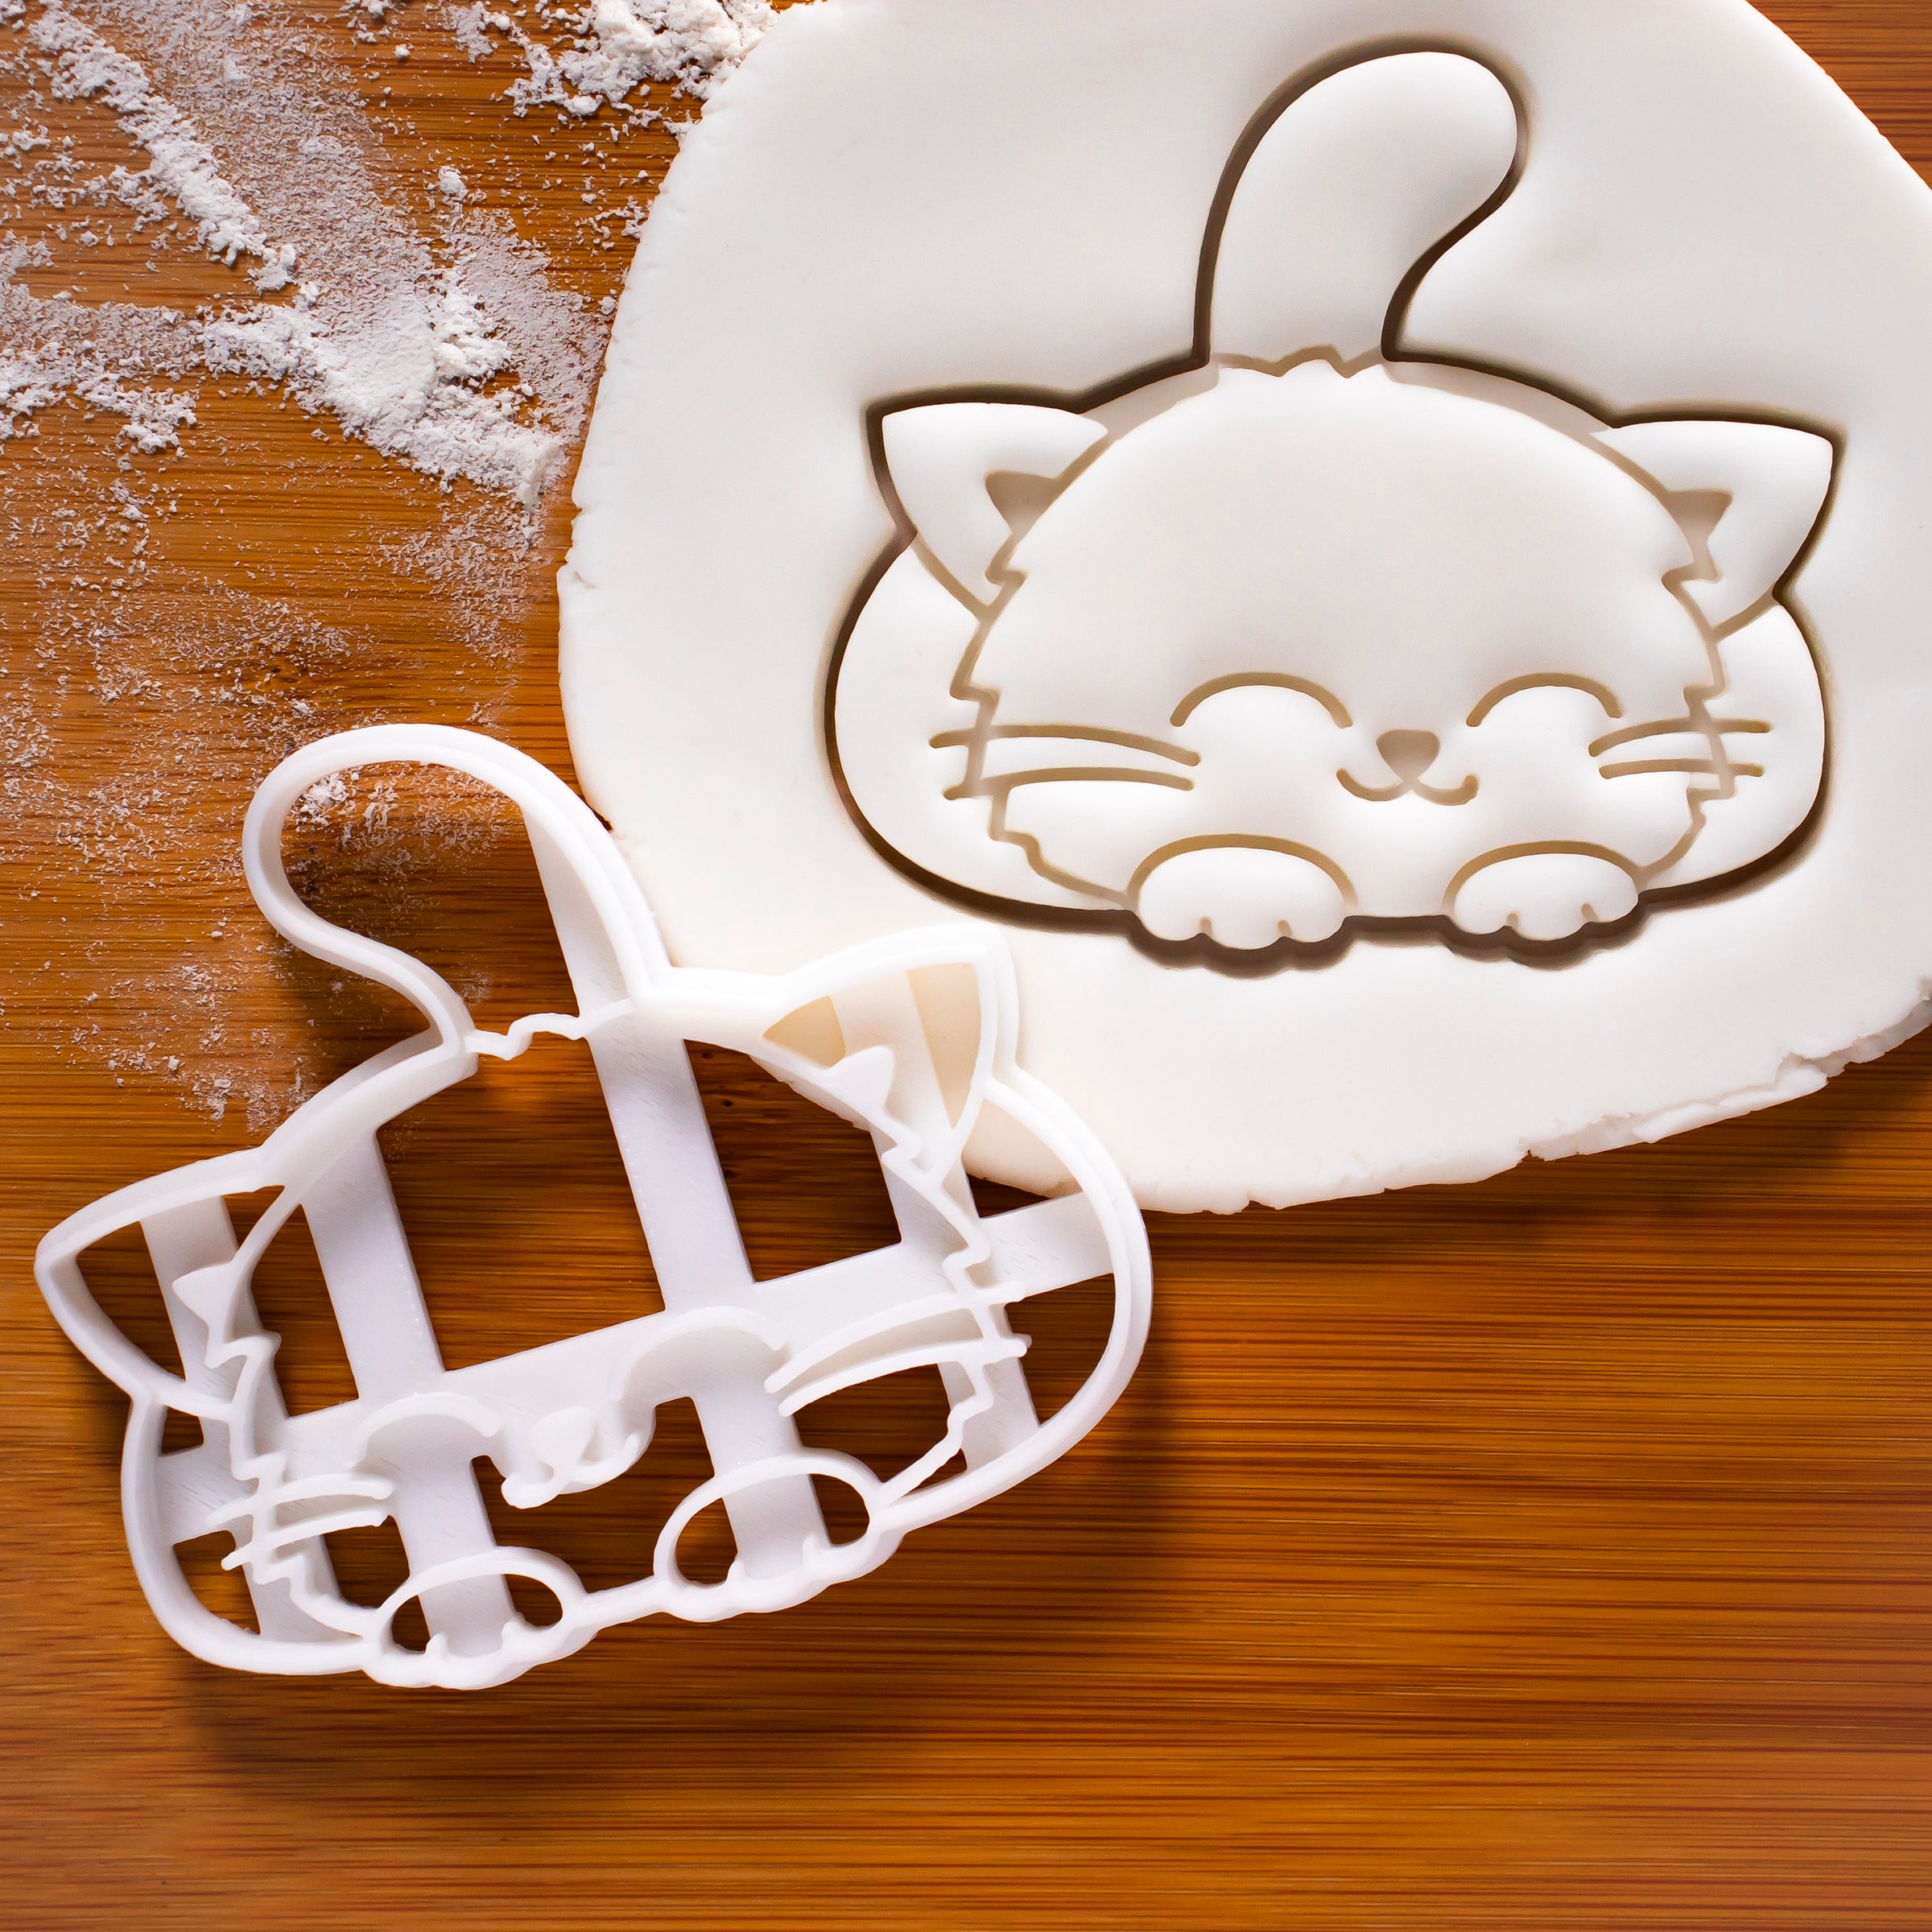 Cute smiley cat cookie cutter